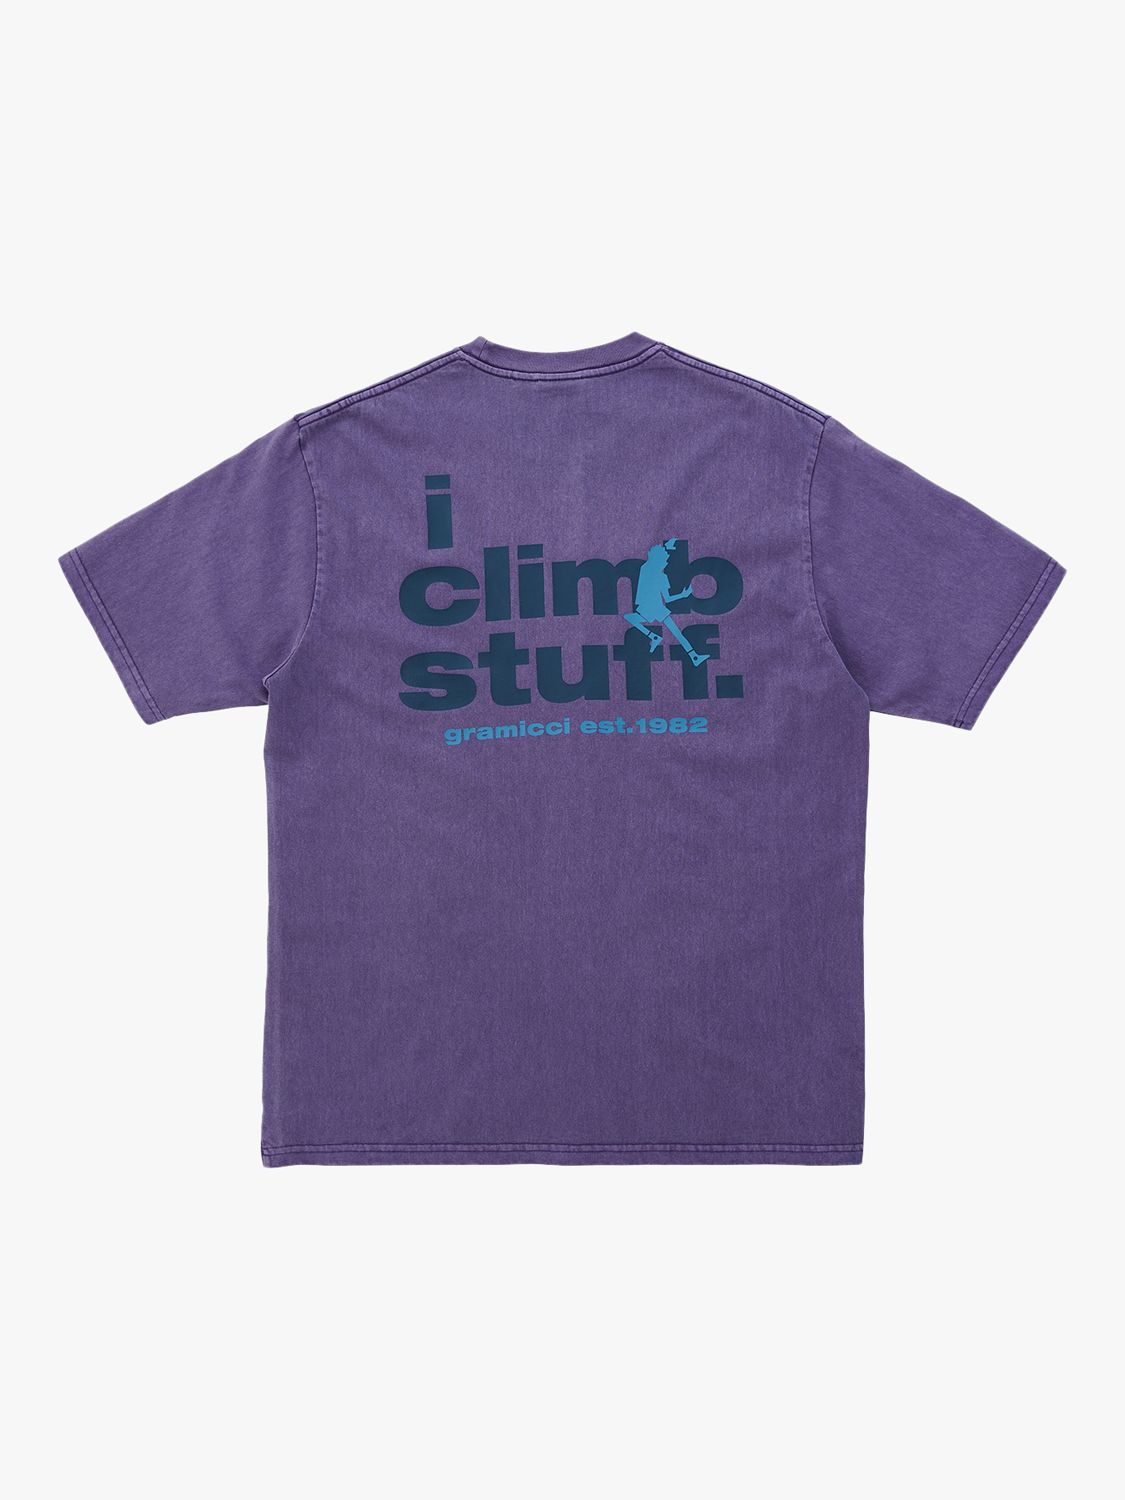 Gramicci I Climb Stuff Organic Cotton T-Shirt, Purple Pigment, M